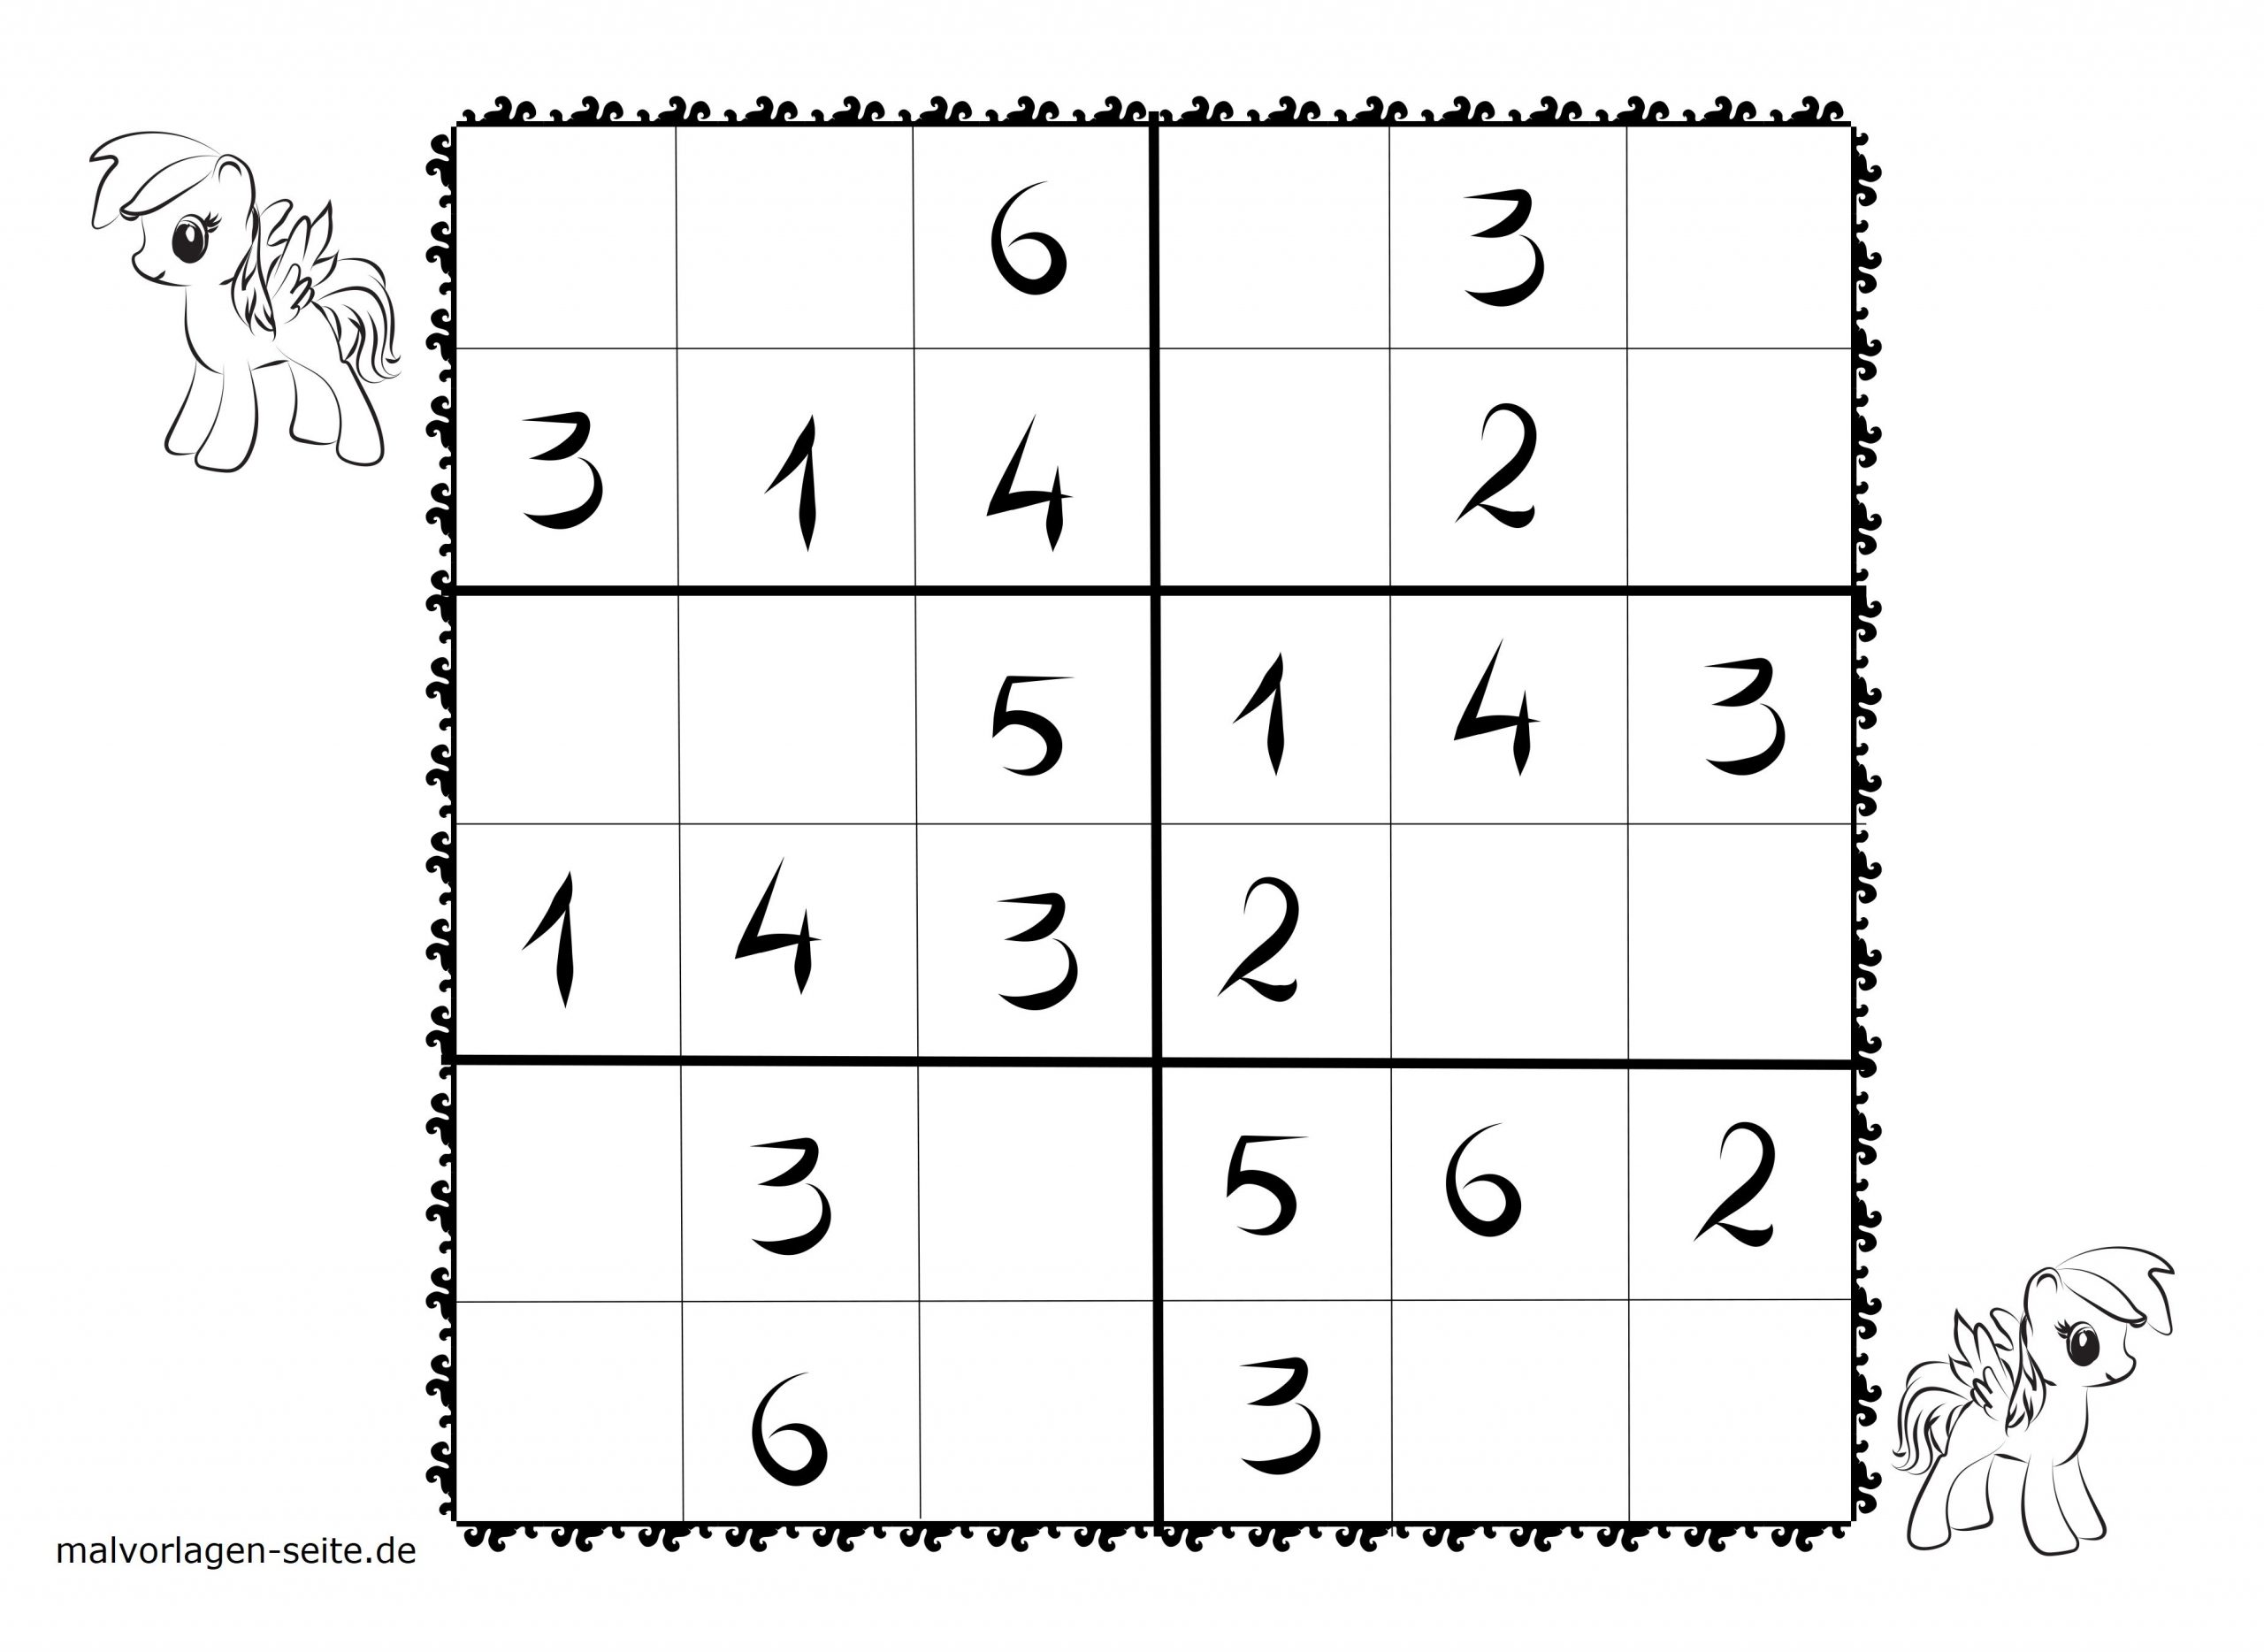 Sudoku Vorlagen Für Kinder 6X6 Kostenlos Herunterladen Und in Sudoku Vorlagen